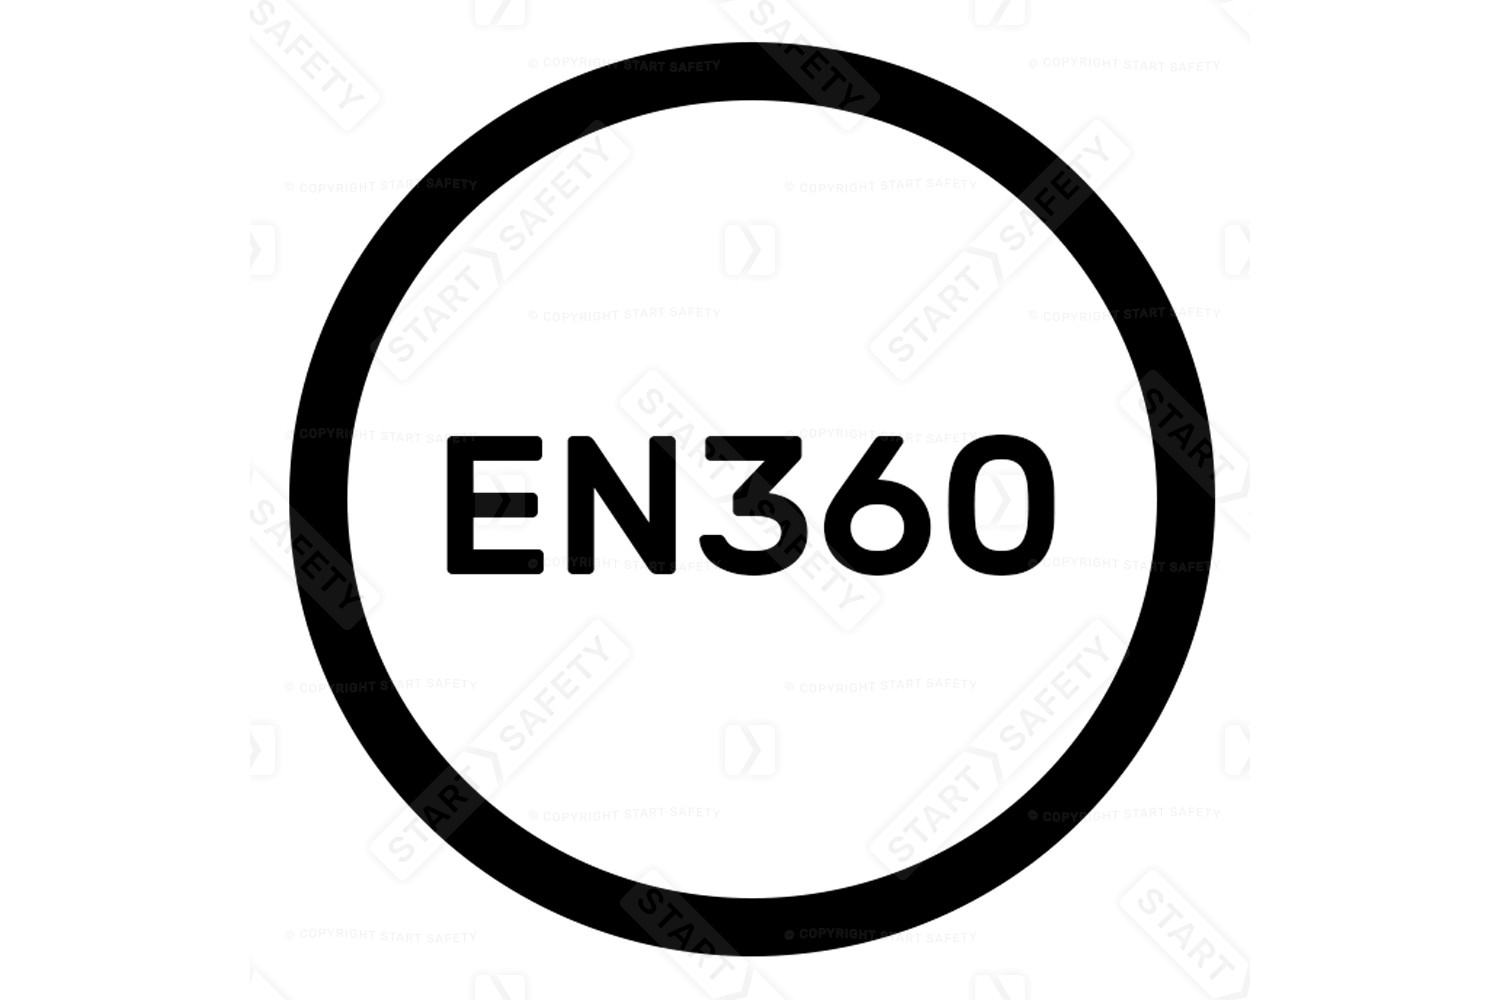 EN360:2002 Standard